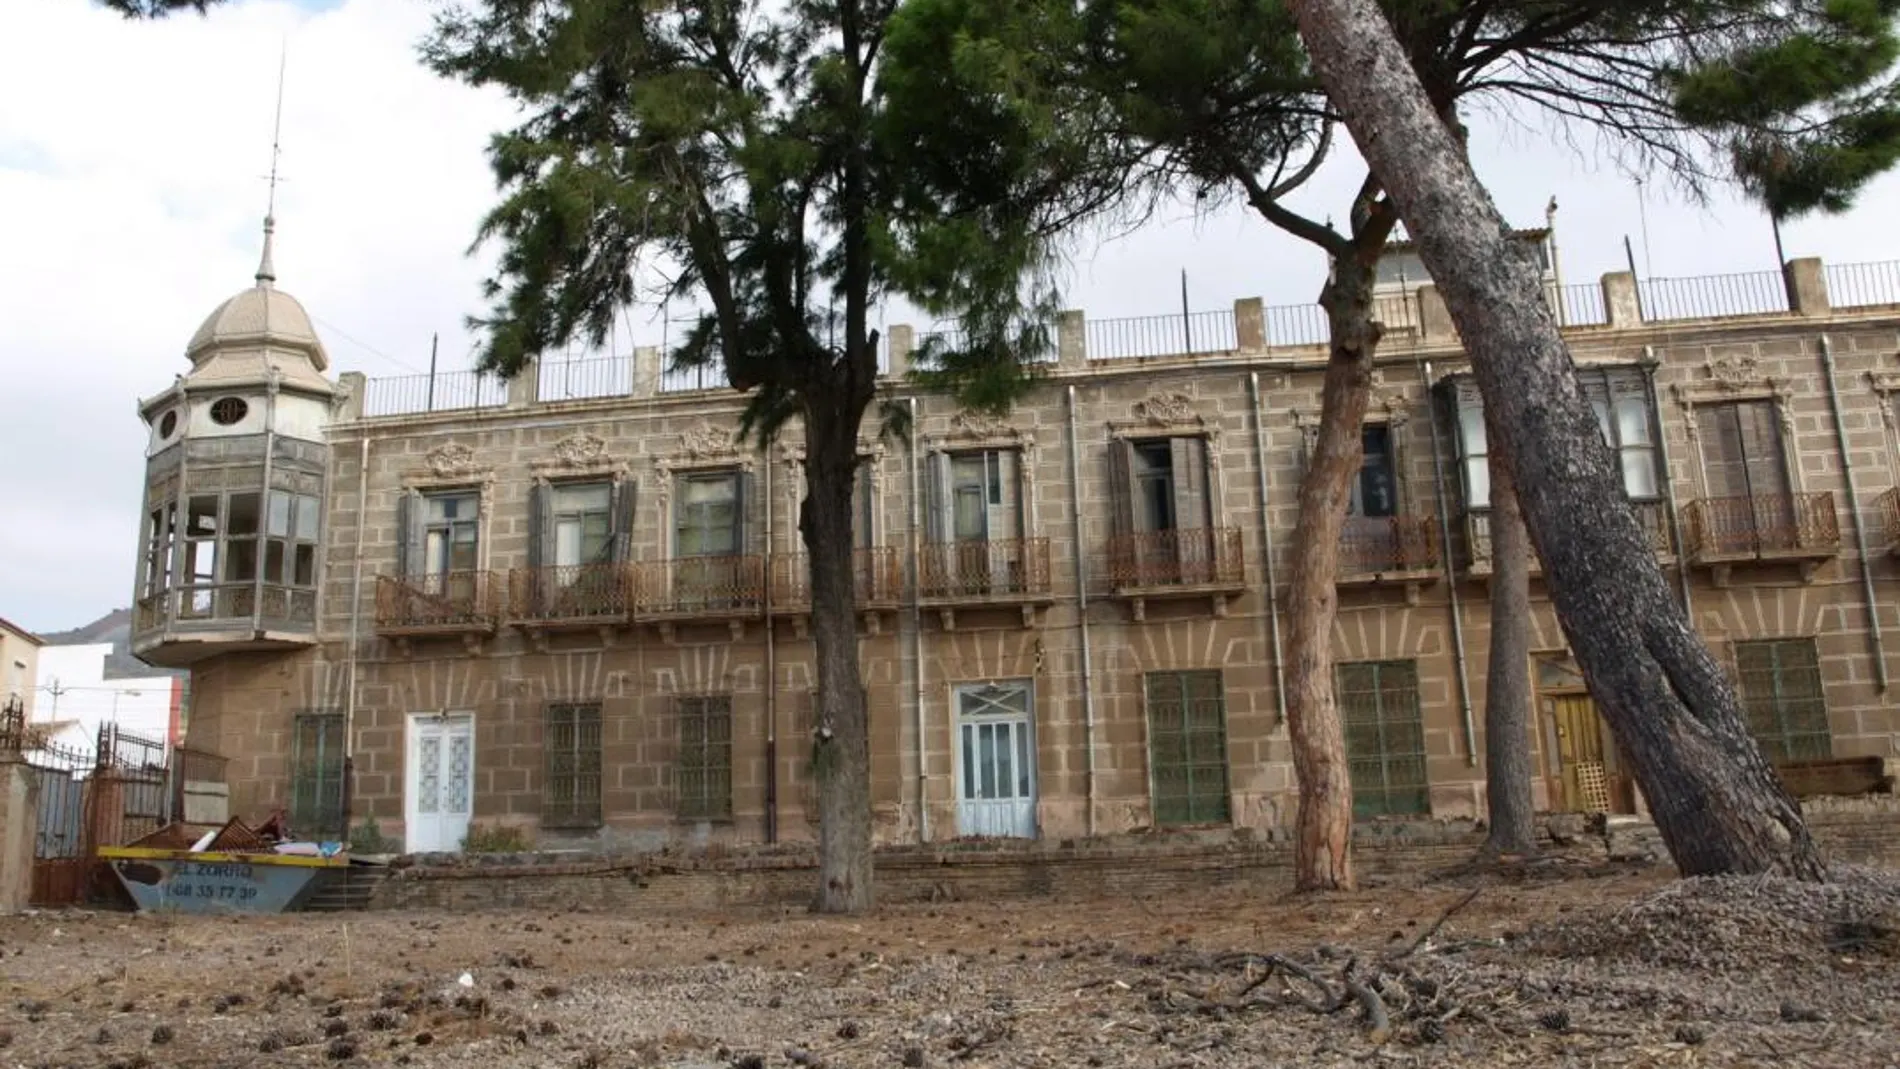 La Villa Calamari ha sufrido diversos incendios y actos vandálicos que la han deteriorado gravemente. LA RAZÓN